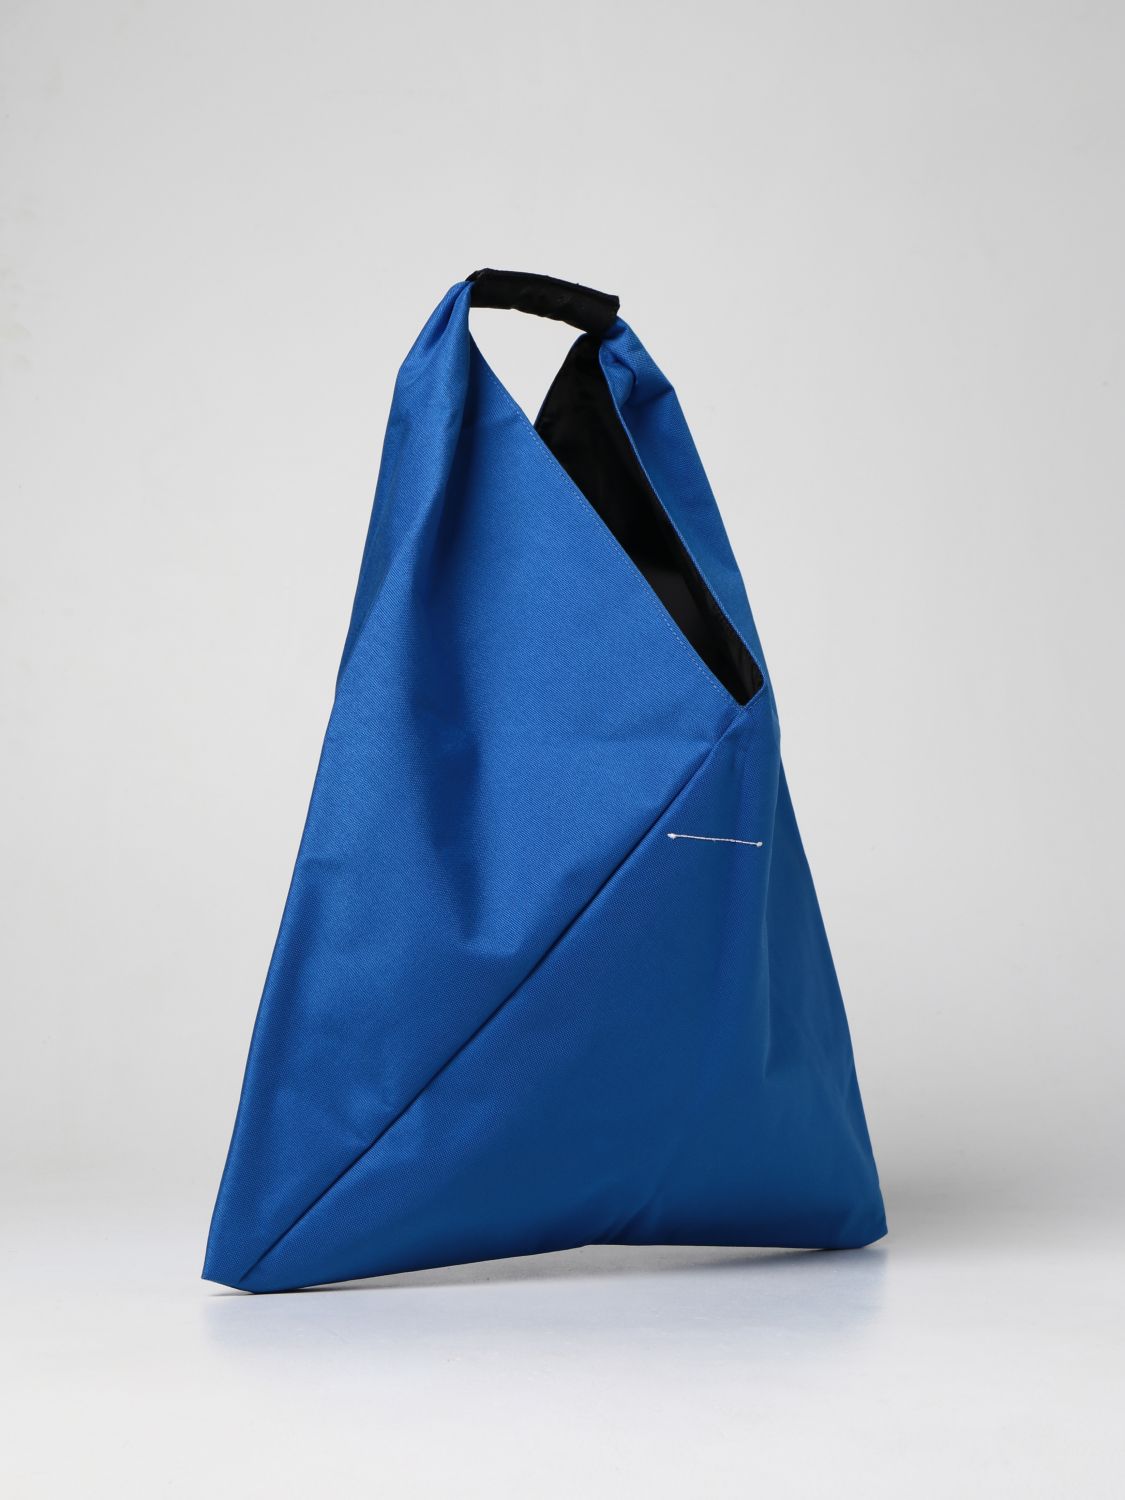 Bags Eastpak: Japanese Mm6 Maison Margiela x Eastpak nylon bag blue 2